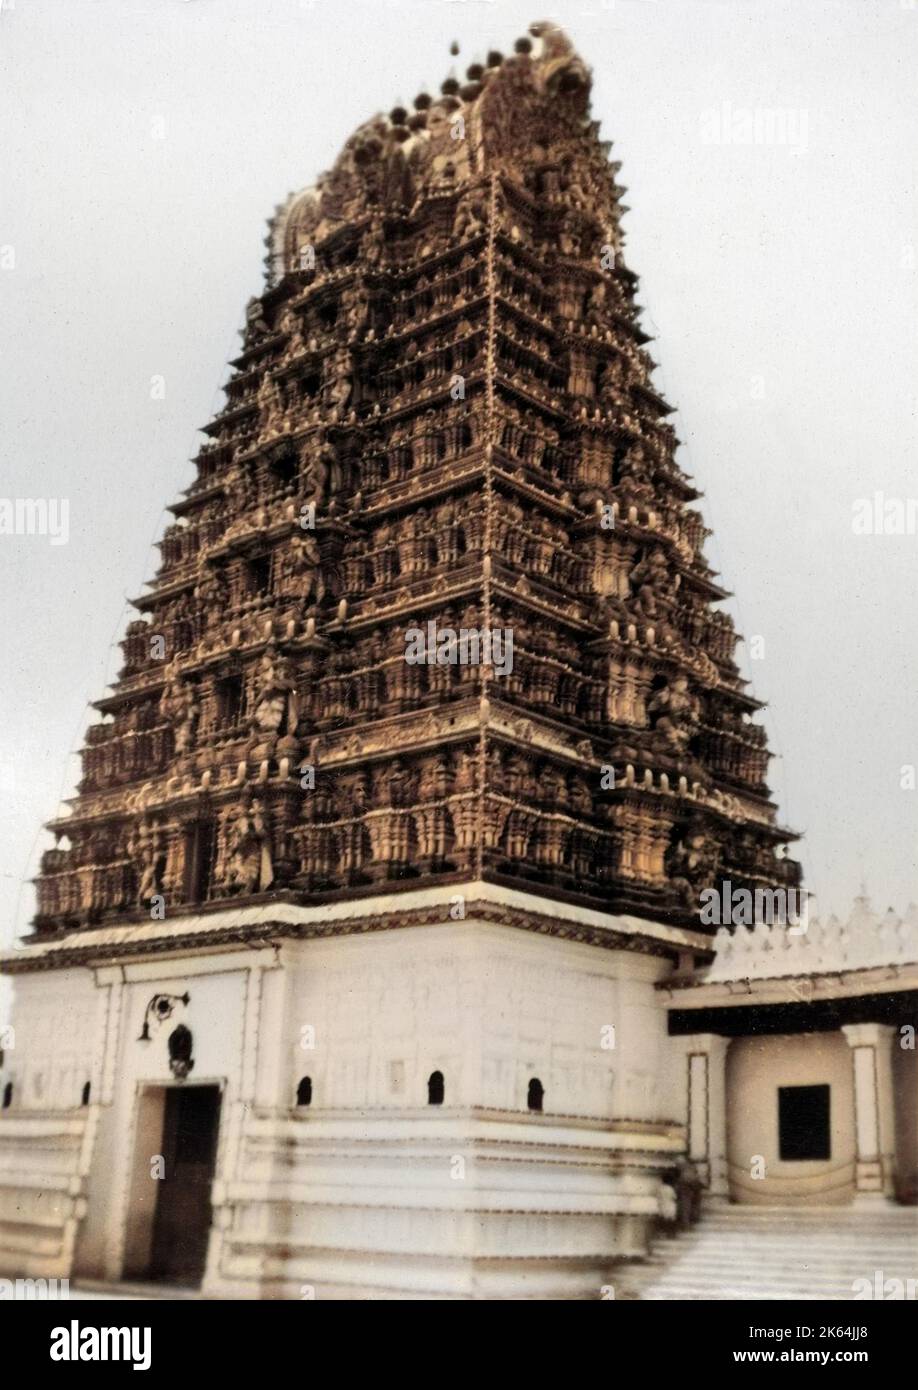 Chamundeshwari Tempel - Chamundi Hills - Mysore, Indien. Der Legende nach wurde der Dämon (Asura) Mahishasura (siehe 10698532), König des Gebiets, das derzeit Mysore ist, nach einem heftigen Kampf von der Göttin Chamundeswari (auch Chamundi) getötet. Die Hügel sind nach der Göttin benannt, und dieser Tempel ehrt sie. Datum: Ca. 1910s Stockfoto